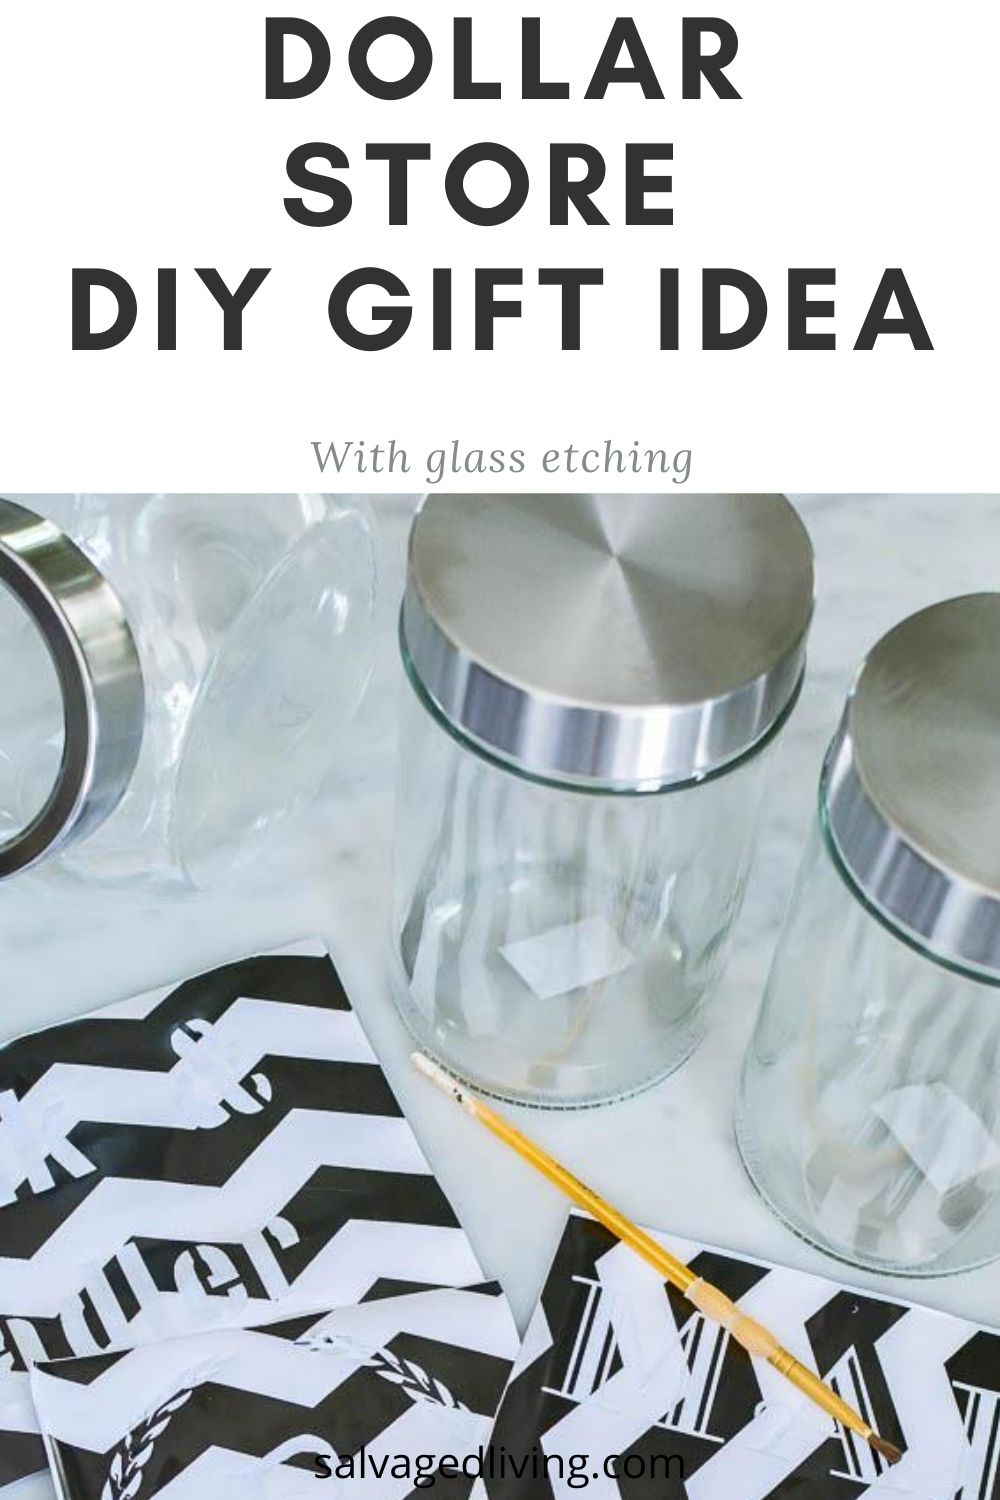 The best ideas for a unique wedding gift | Glassmania.com